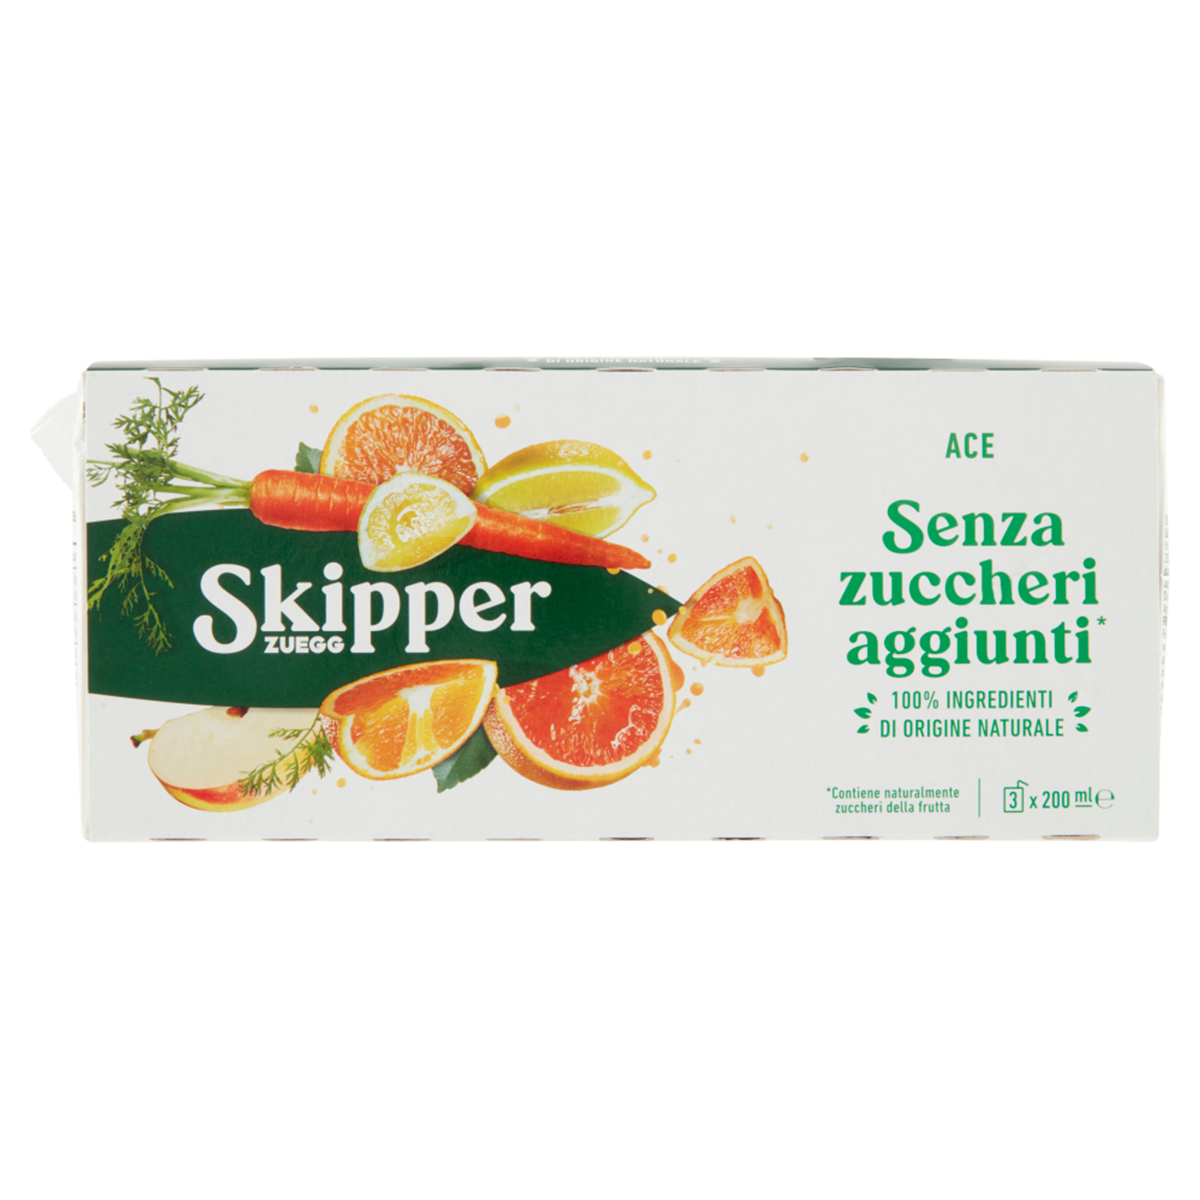 SKIPPER ACE Senza zuccheri aggiunti